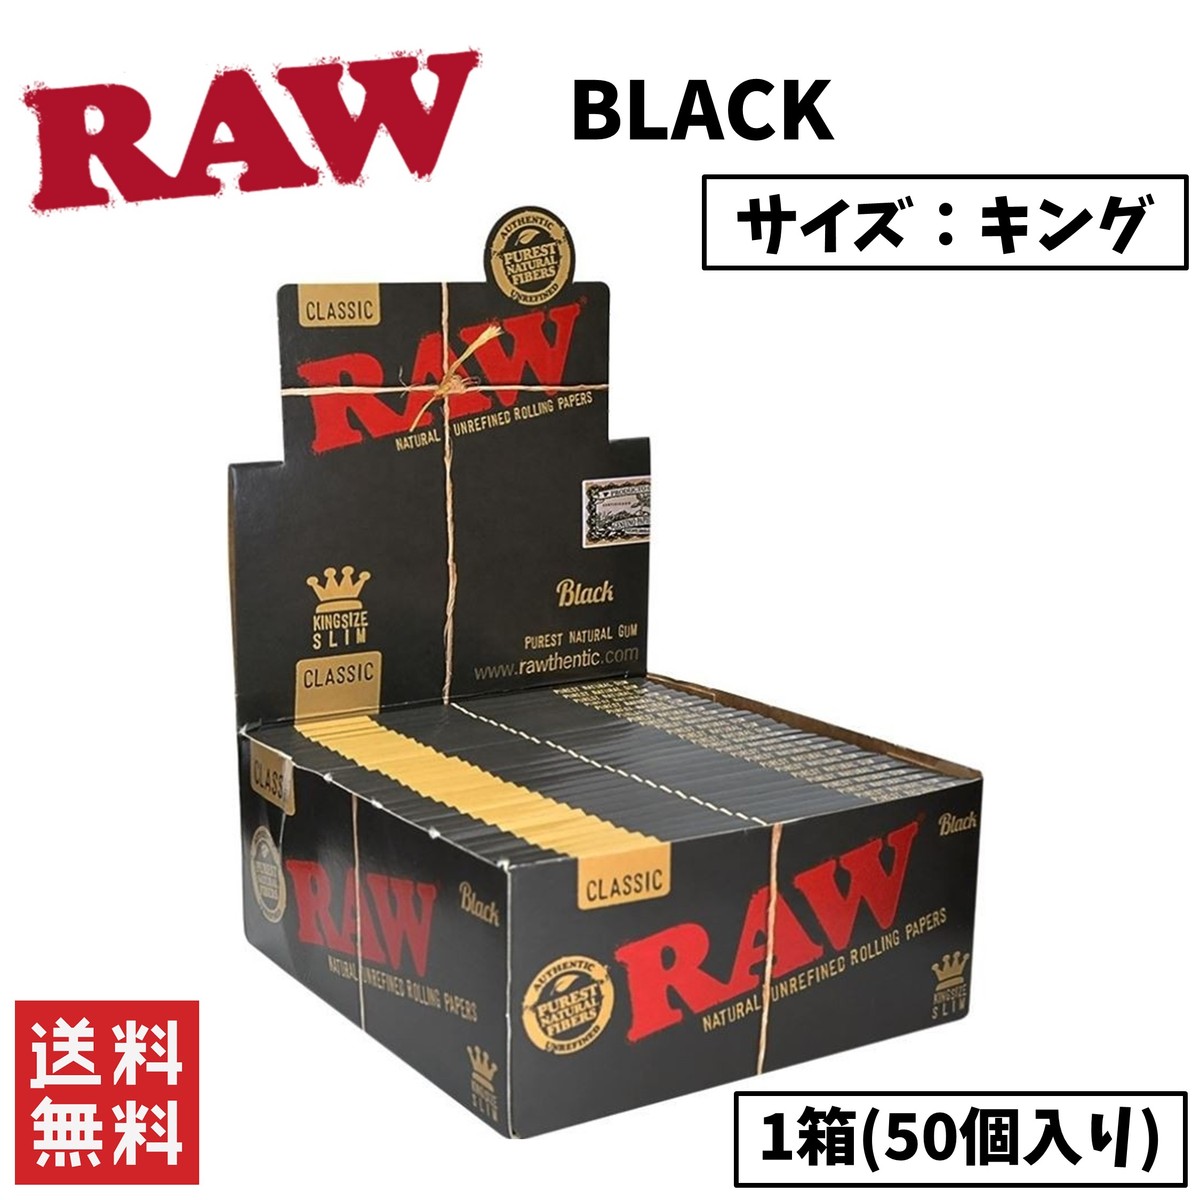 RAW CLASSIC BLACK クラシック ブラック キングサイズ ペーパー 1箱 50個入り 喫煙具 手巻きたばこ ペーパー